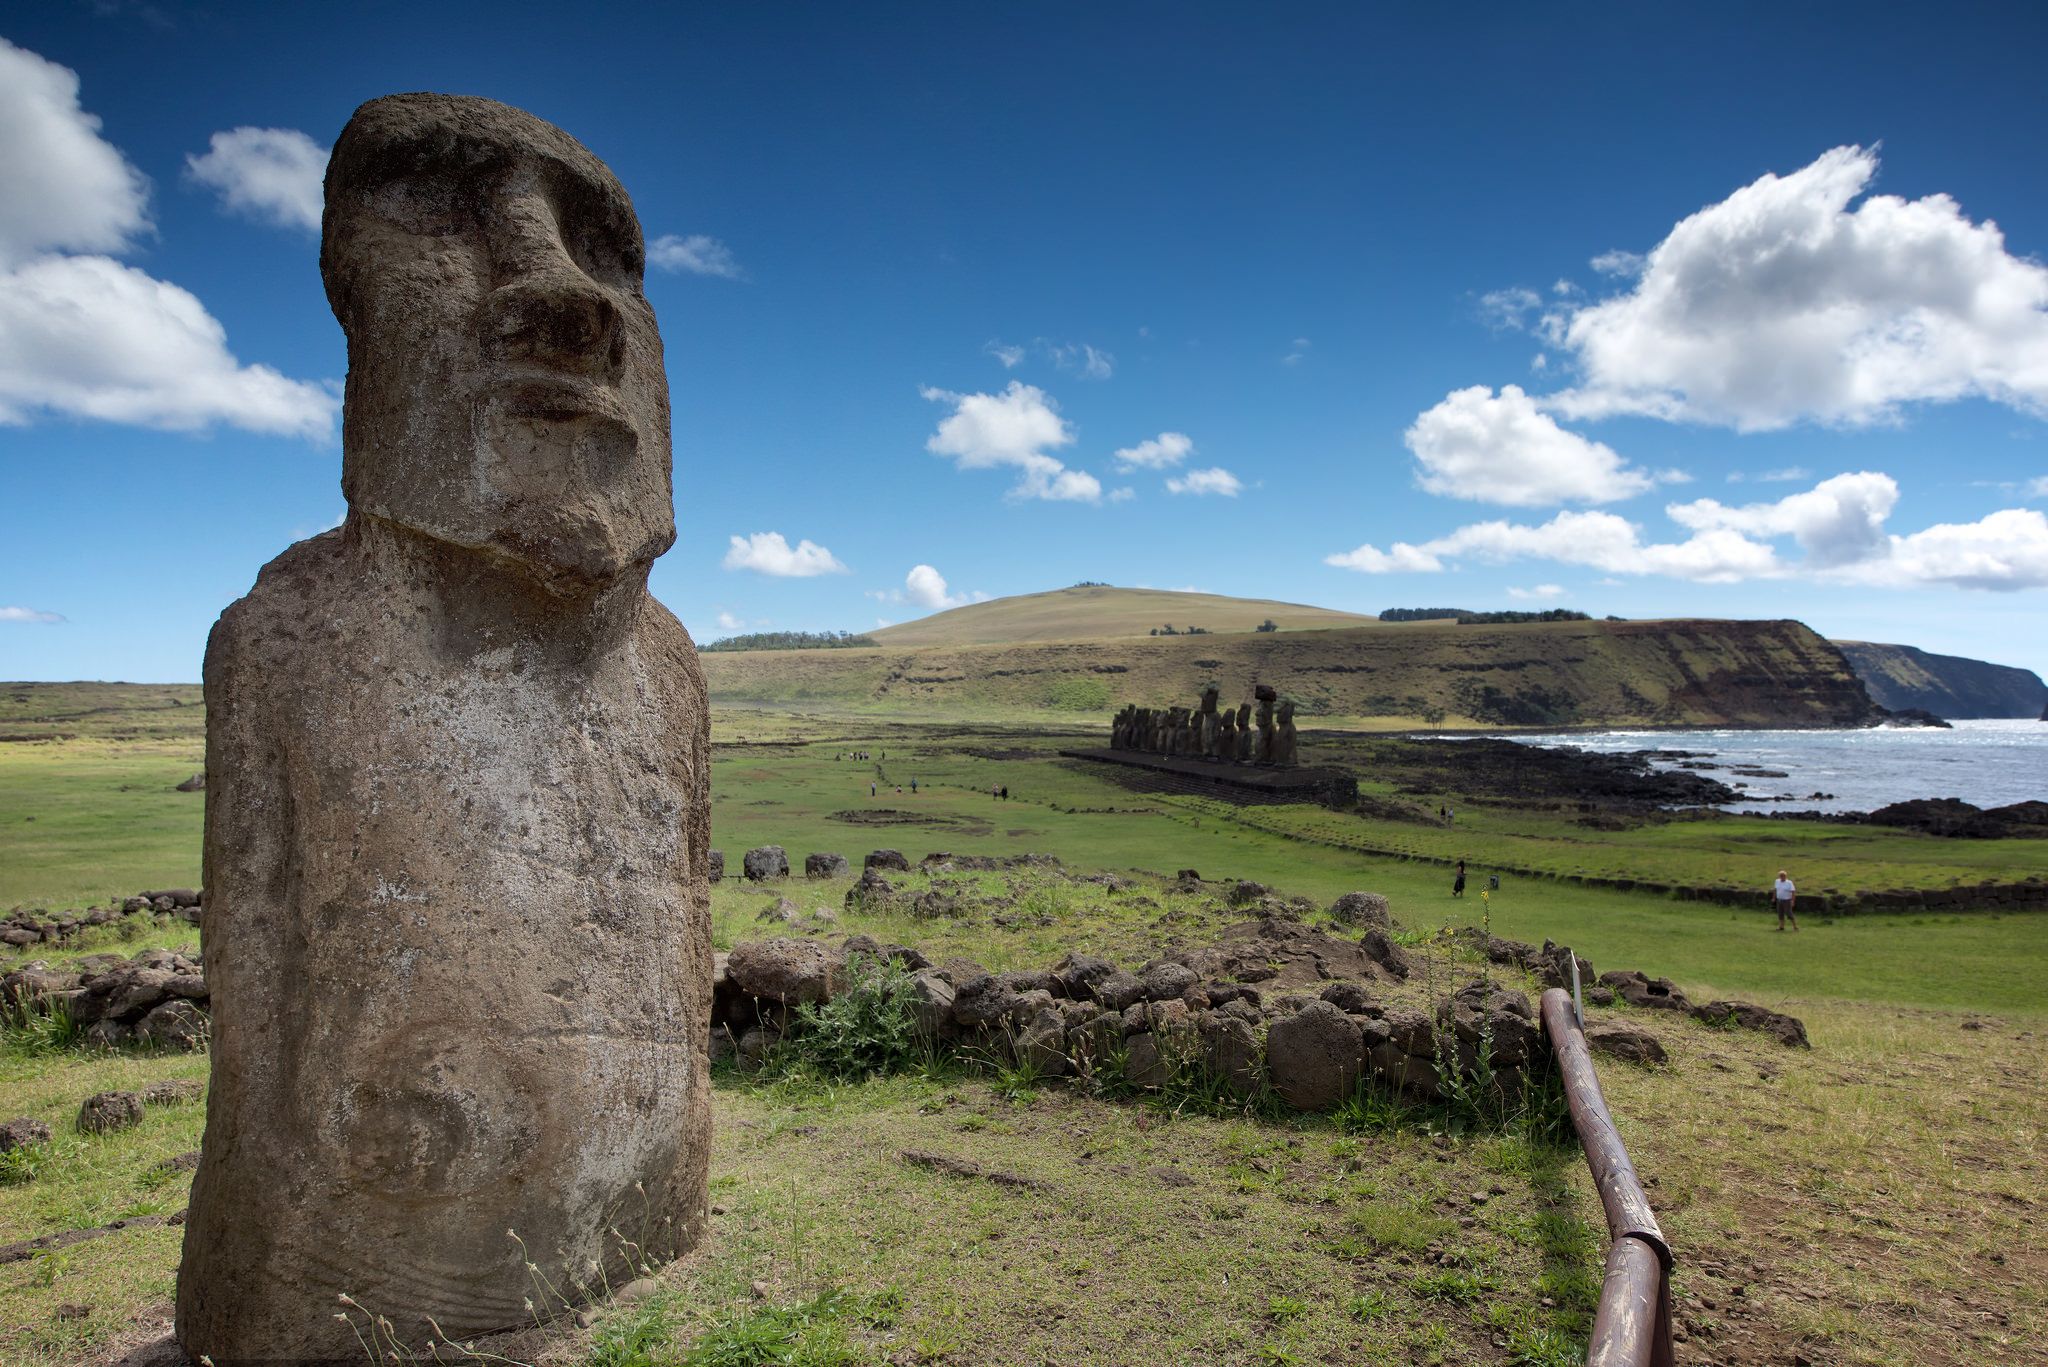 Mini Moai Easter Island Statues  Easter island statues, Easter island,  Easter art project